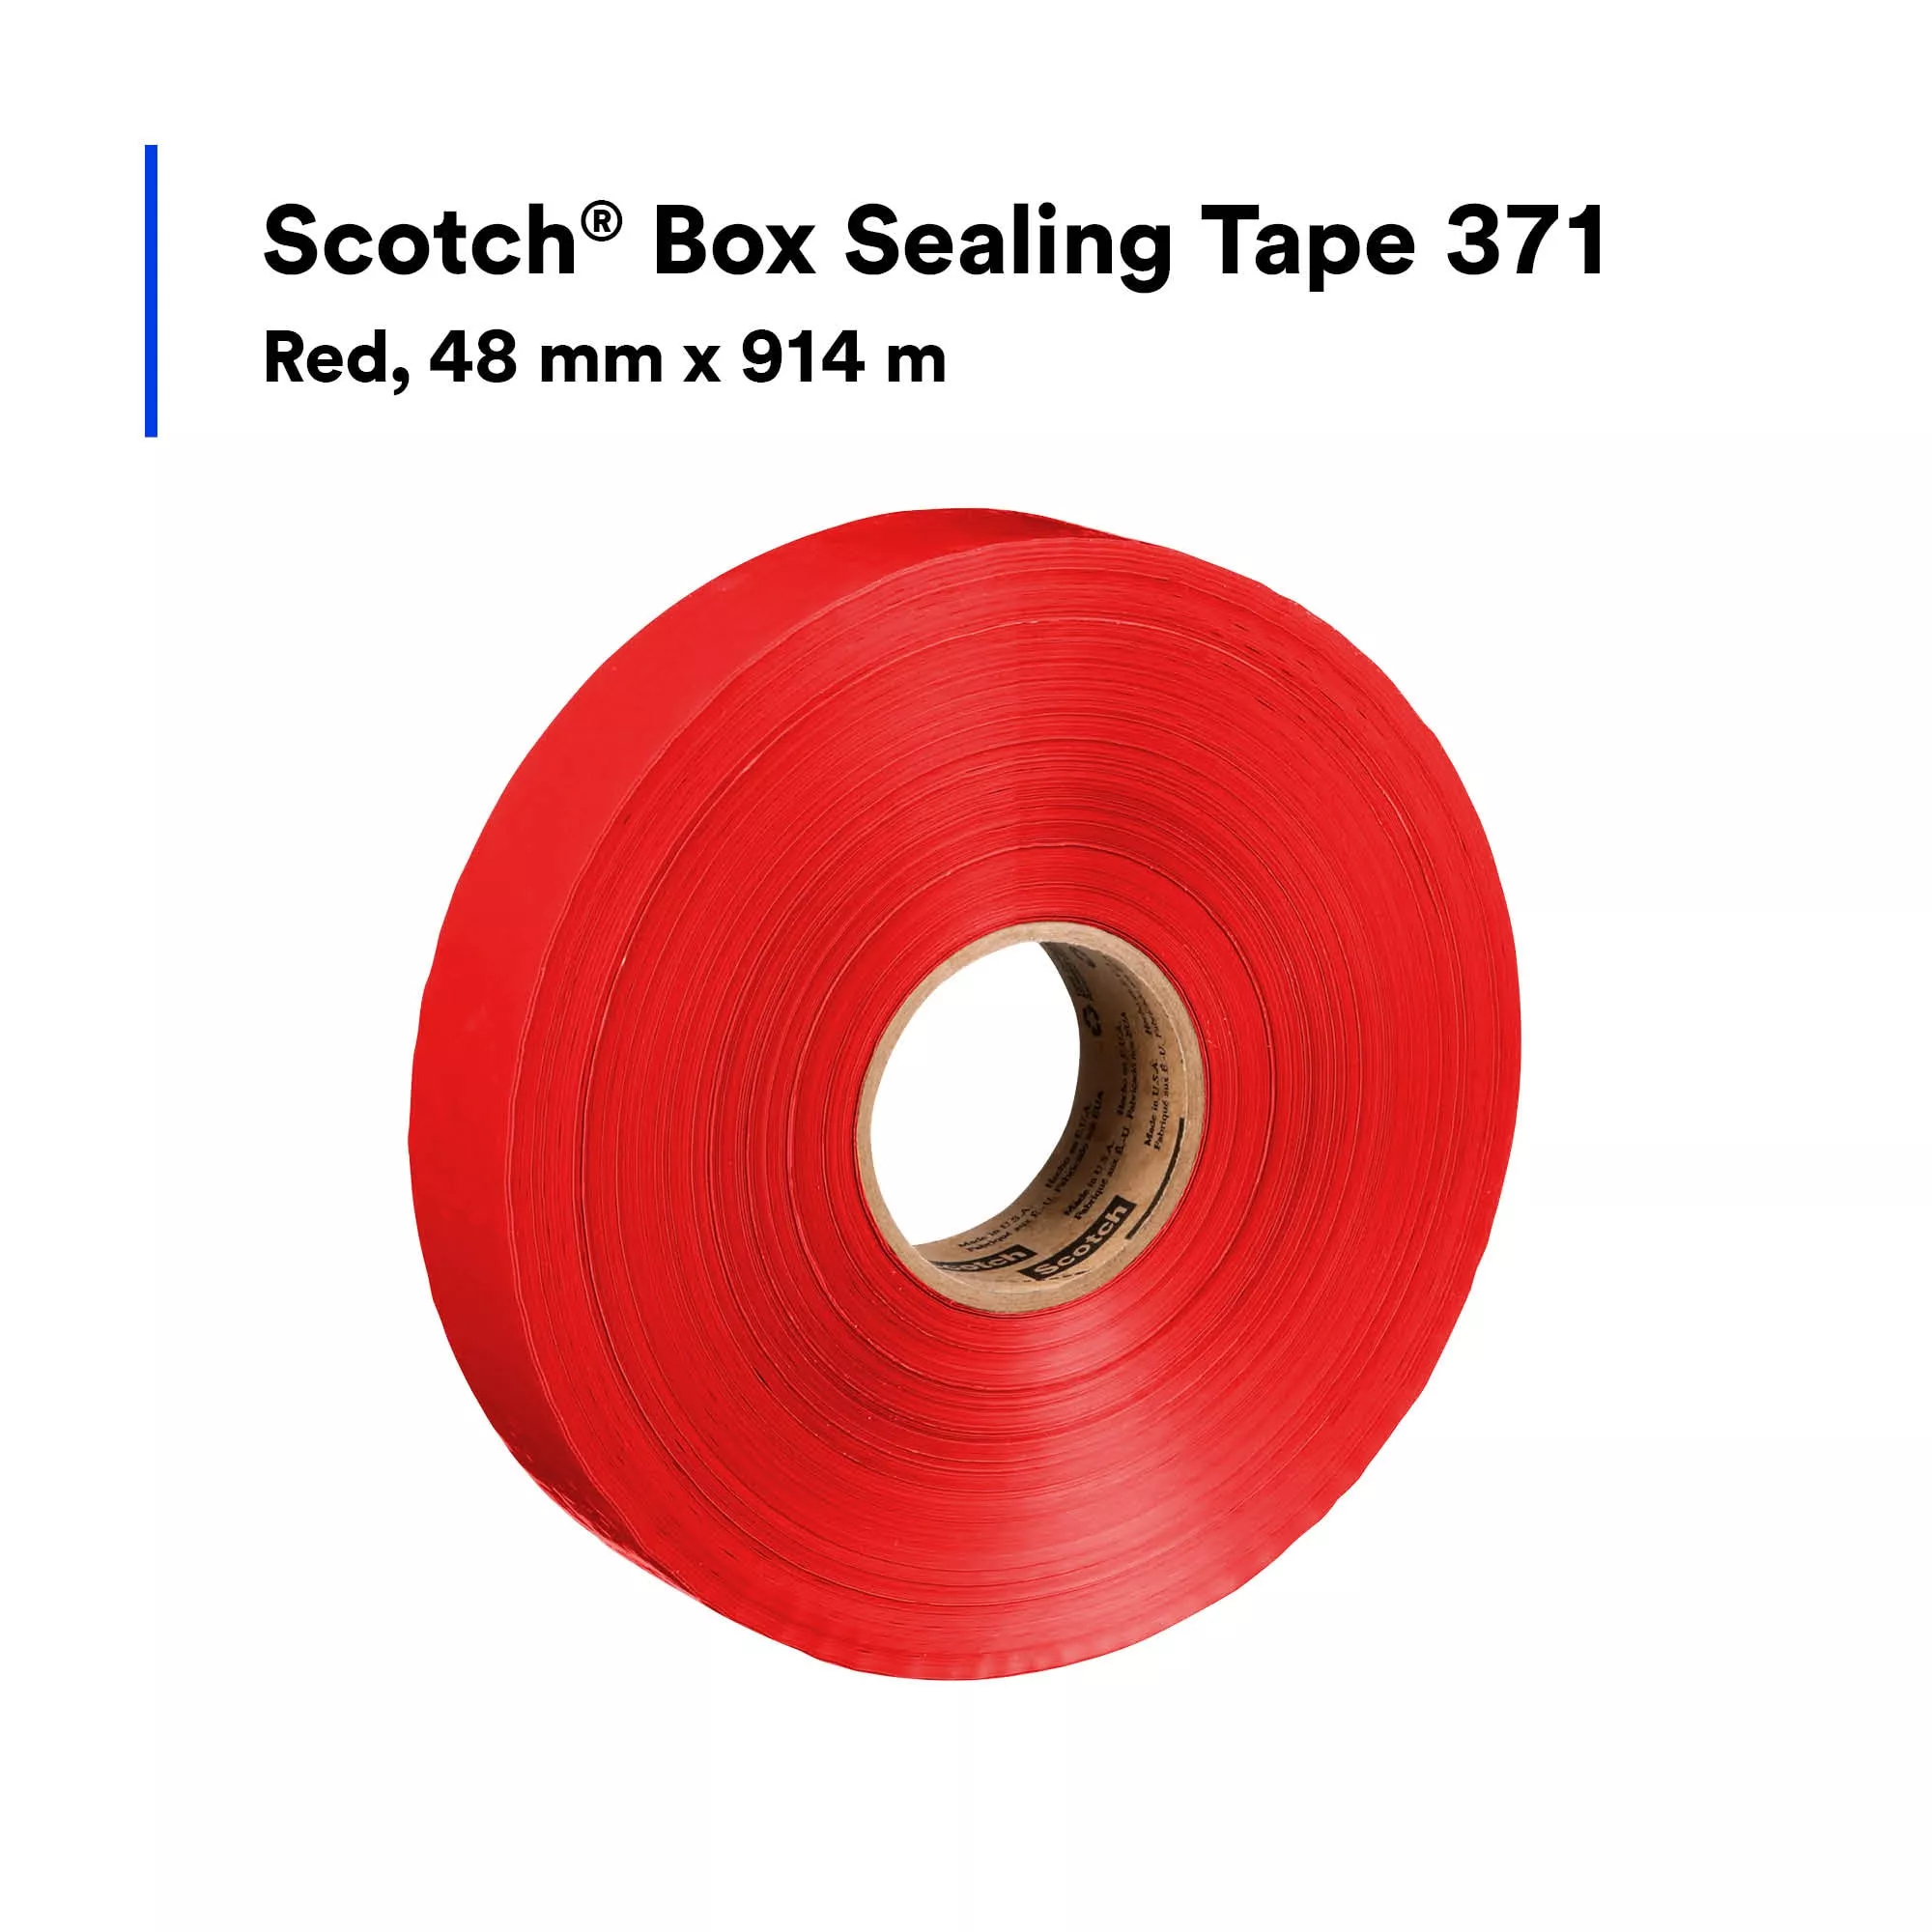 SKU 7100132617 | Scotch® Box Sealing Tape 371